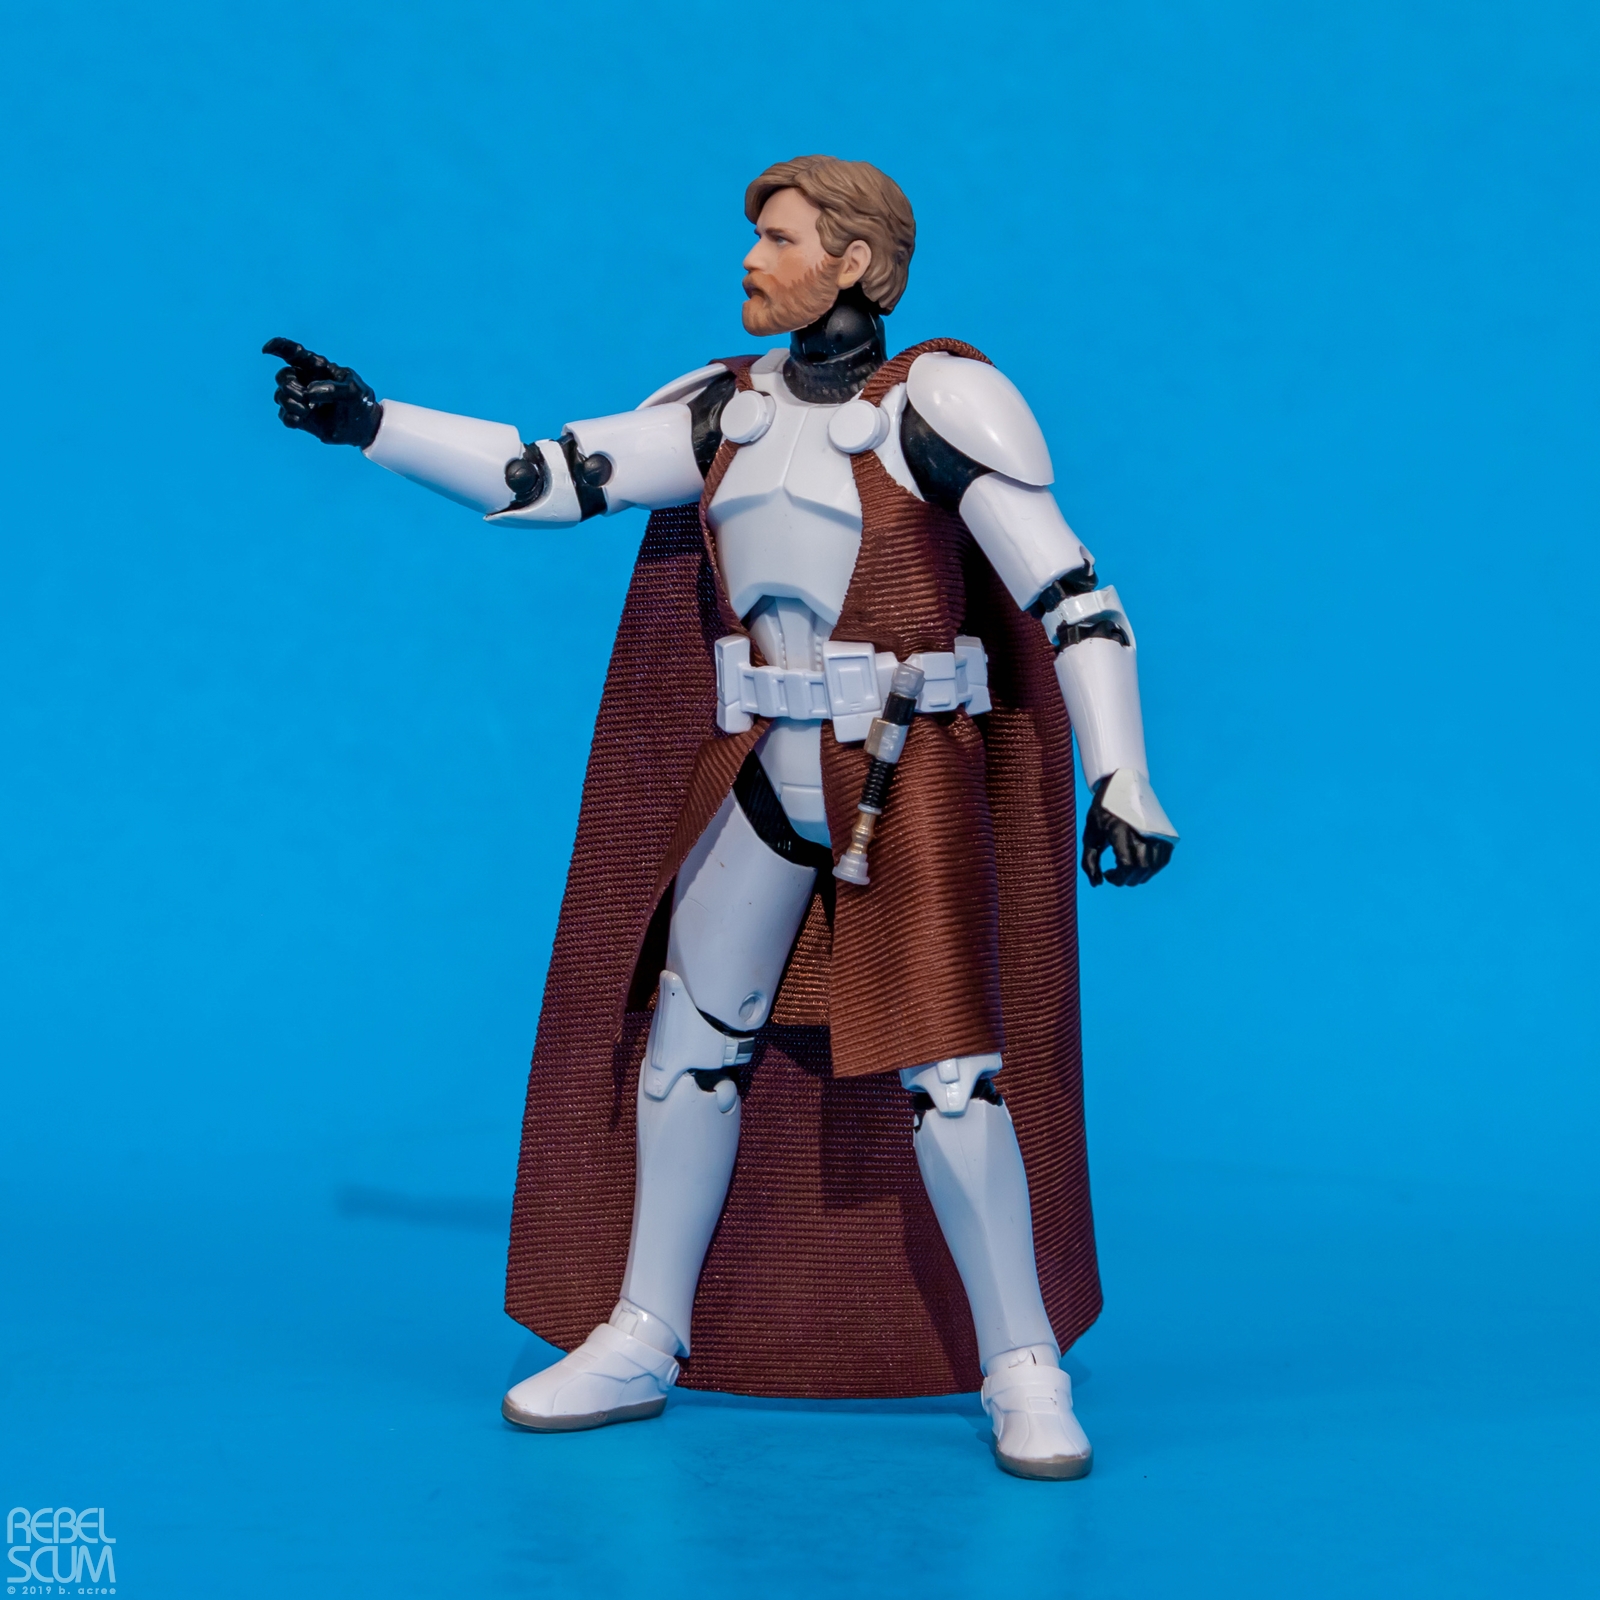 The-Black-Series-Clone-Commander-Obi-Wan-Kenobi-006.jpg